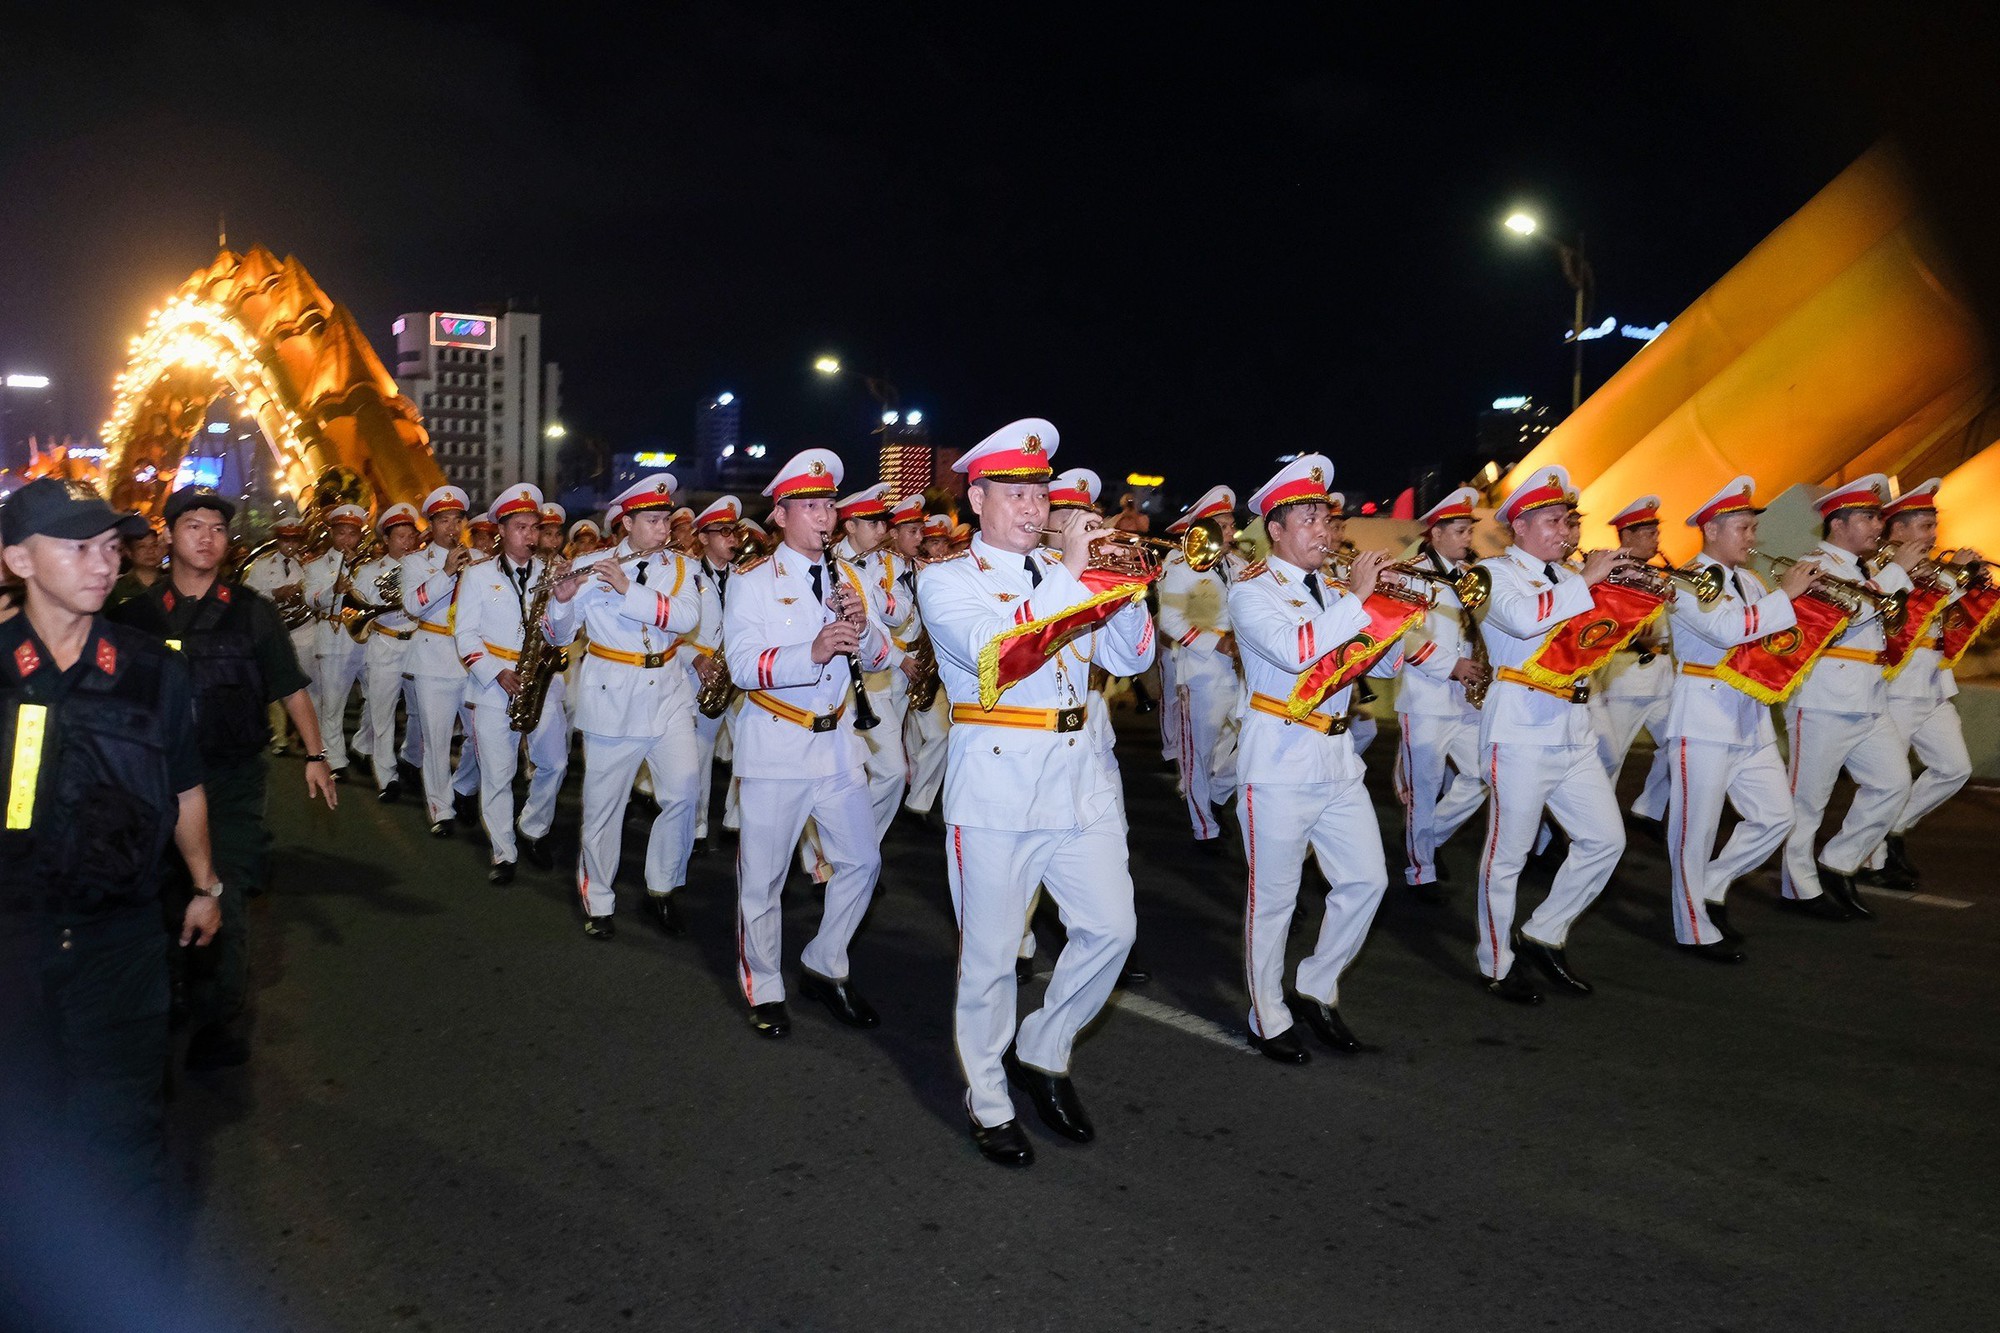 Đoàn nghi lễ Công an nhân dân biểu diễn trên đường phố Đà Nẵng - Ảnh 2.